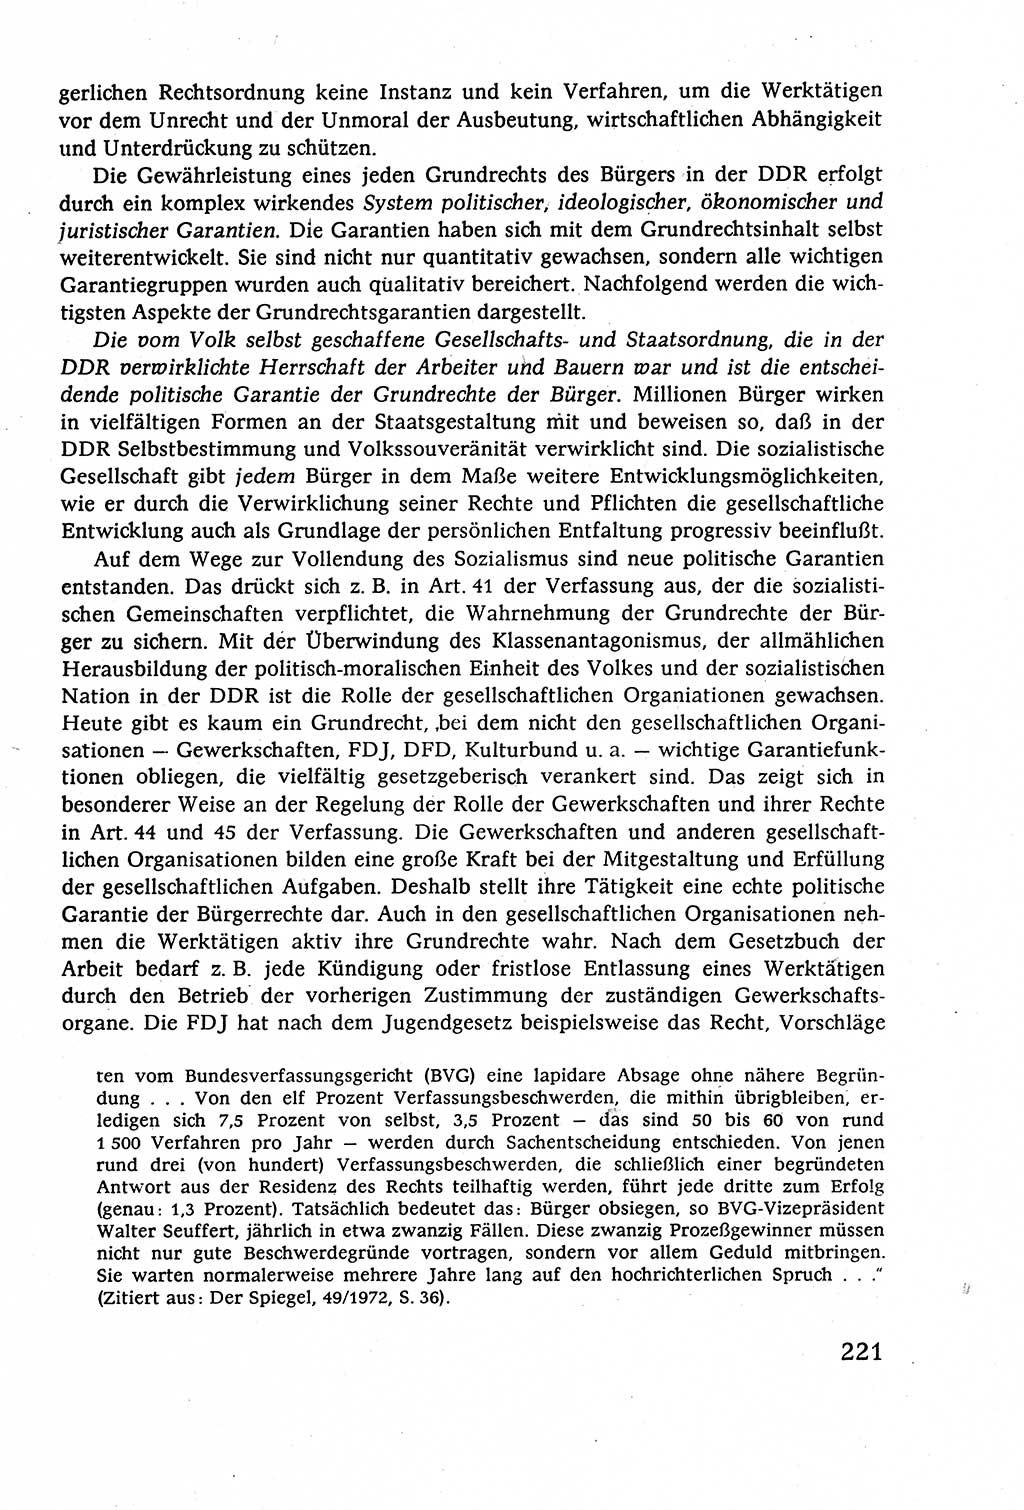 Staatsrecht der DDR (Deutsche Demokratische Republik), Lehrbuch 1977, Seite 221 (St.-R. DDR Lb. 1977, S. 221)